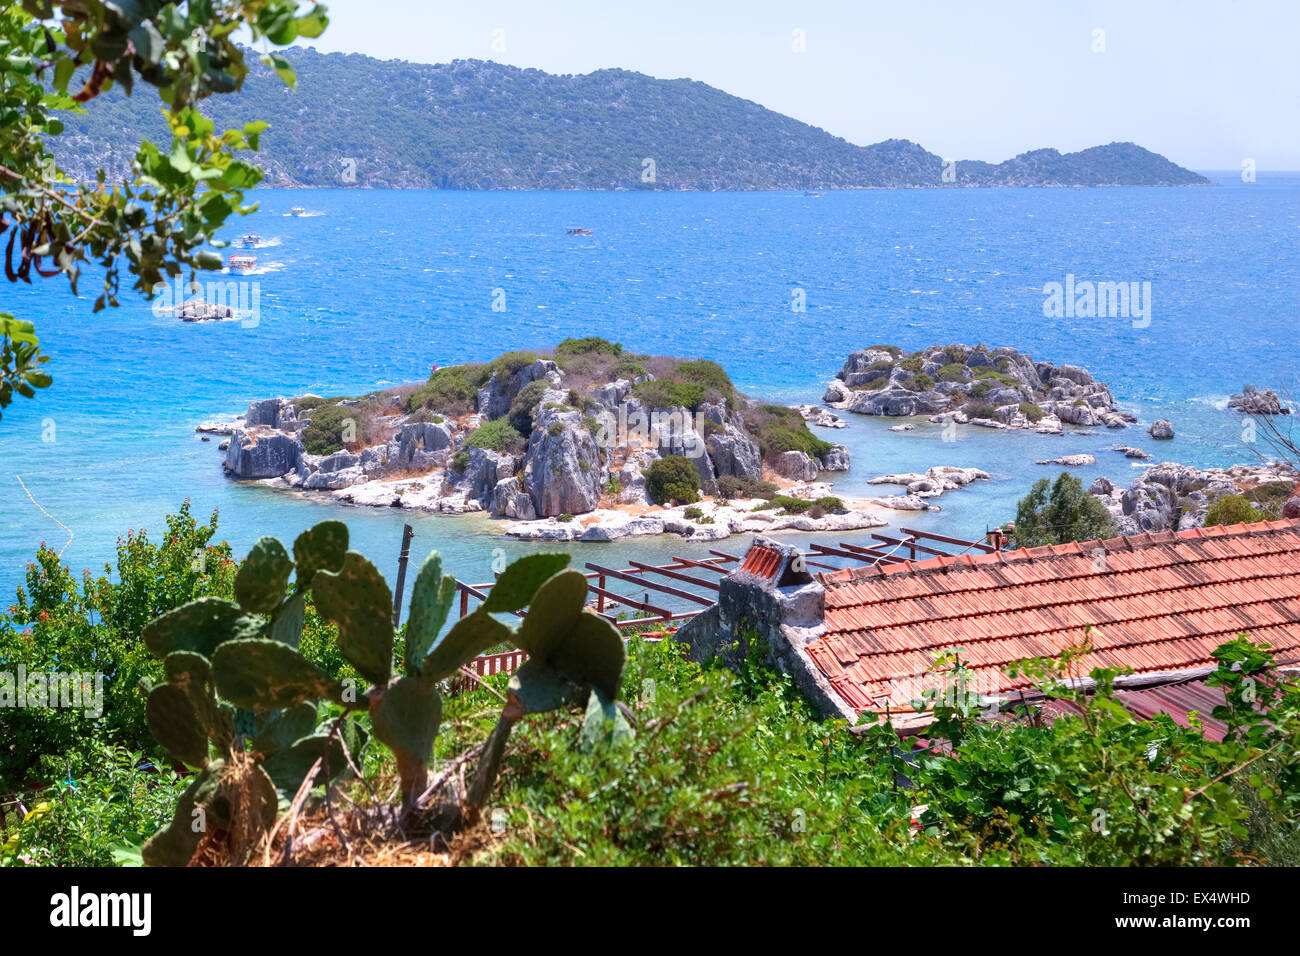 Kekova archipelago, Antalya, Turkey Stock Photo